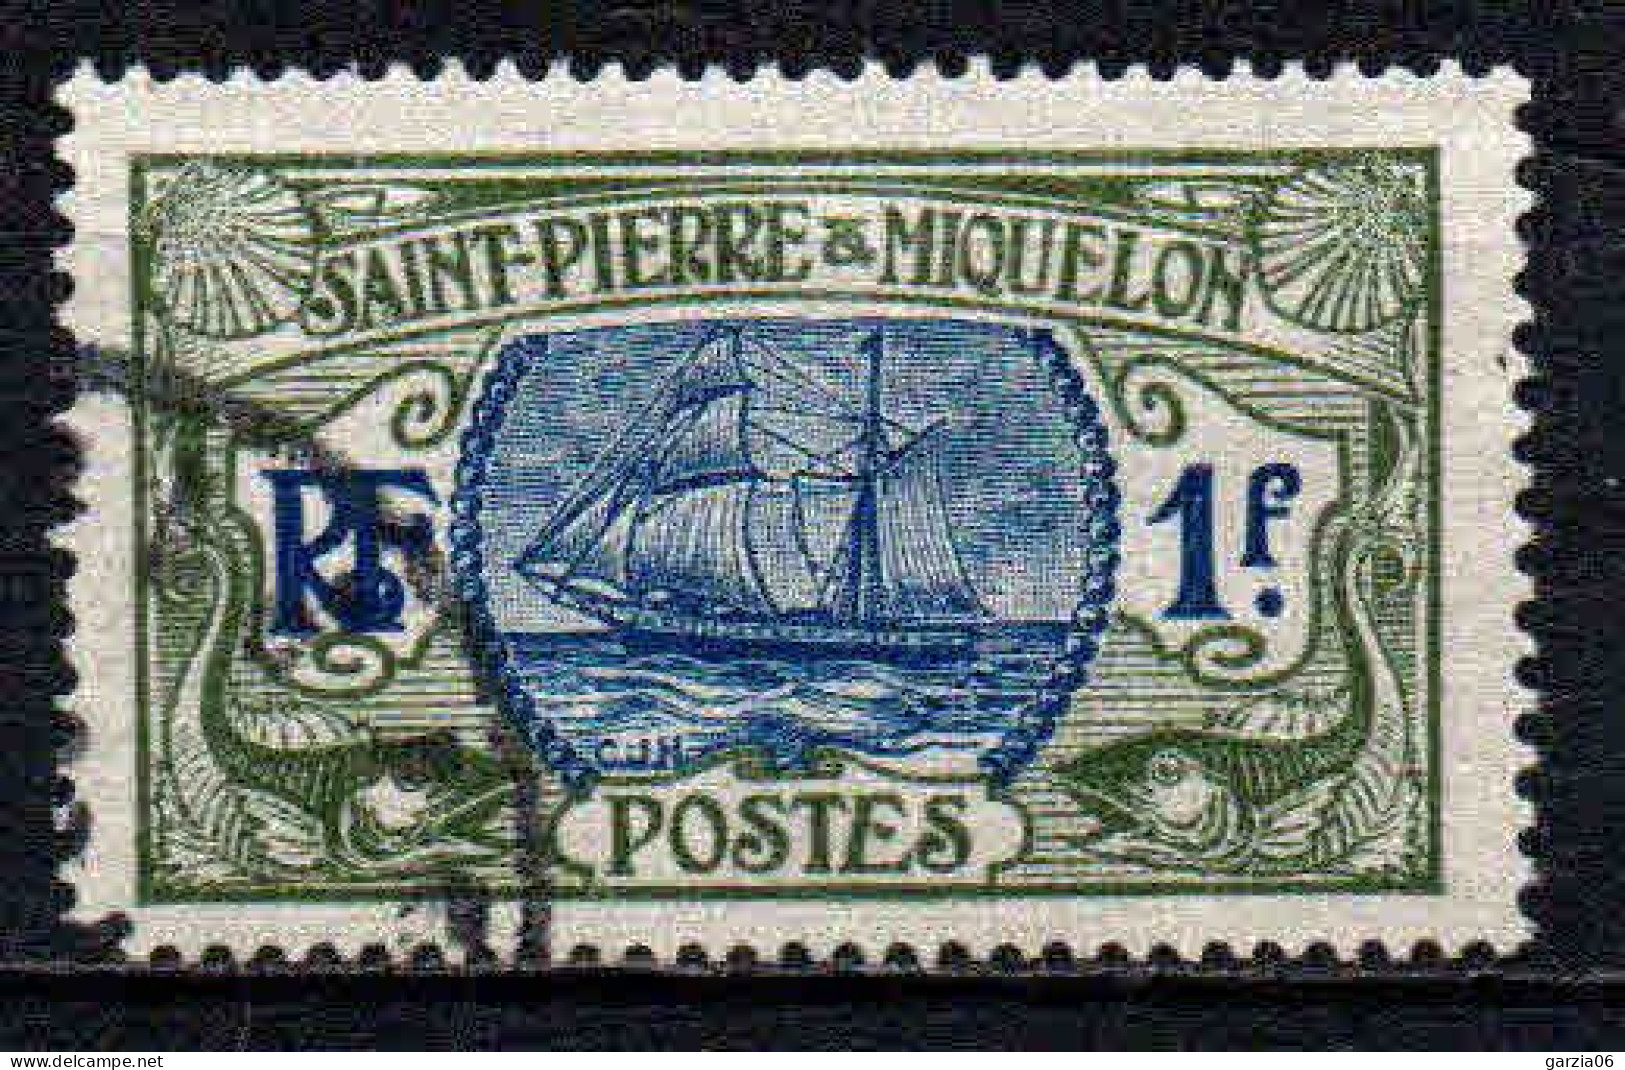 St Pierre Et Miquelon    - 1909 - Bateau De Pèche   - N° 91 - Oblit - Used - Oblitérés